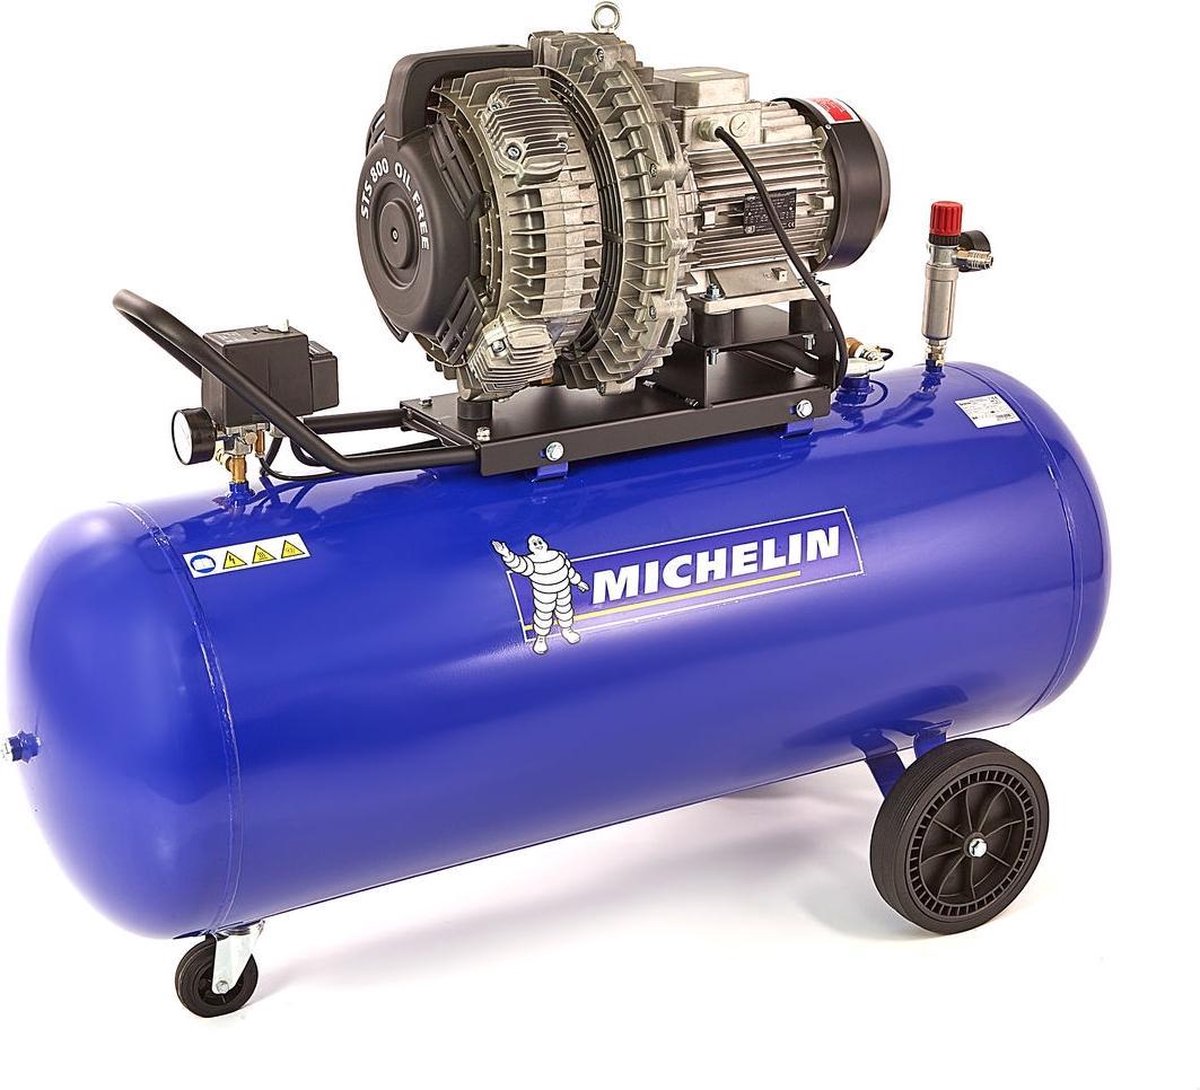 Michelin 5.5 PK 300 Liter Aangedreven Compressor |